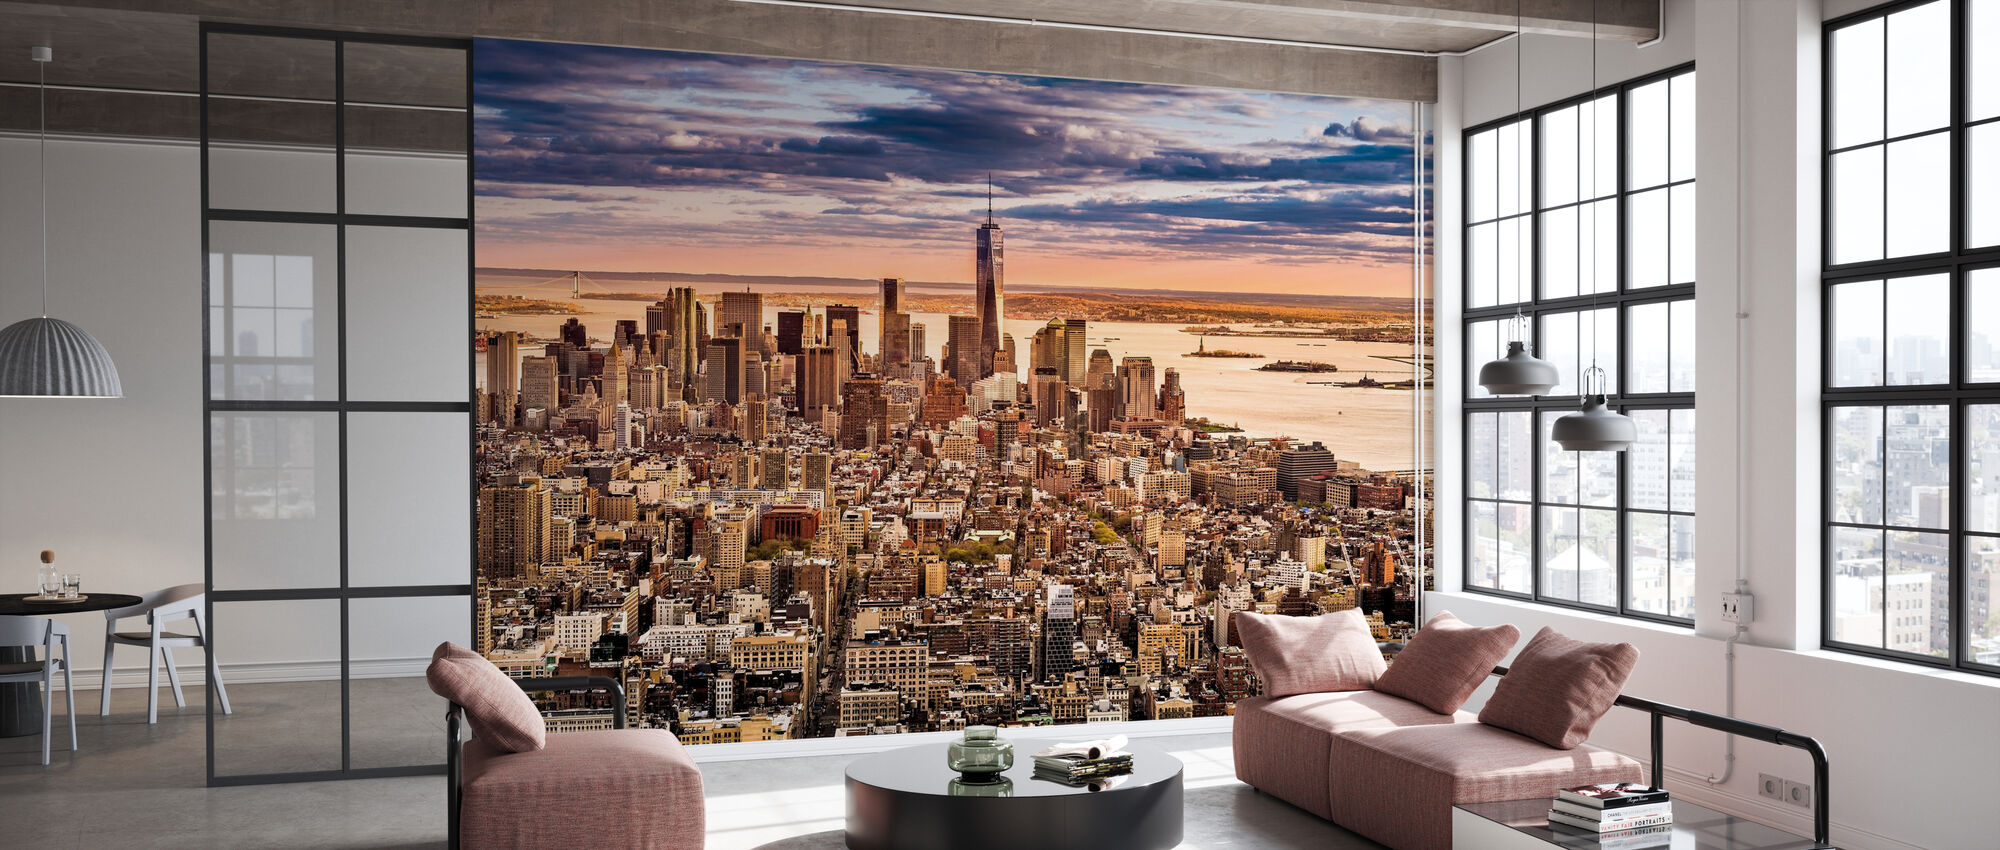 New York Panorama Before Sunset Wall Murals Online Photowall